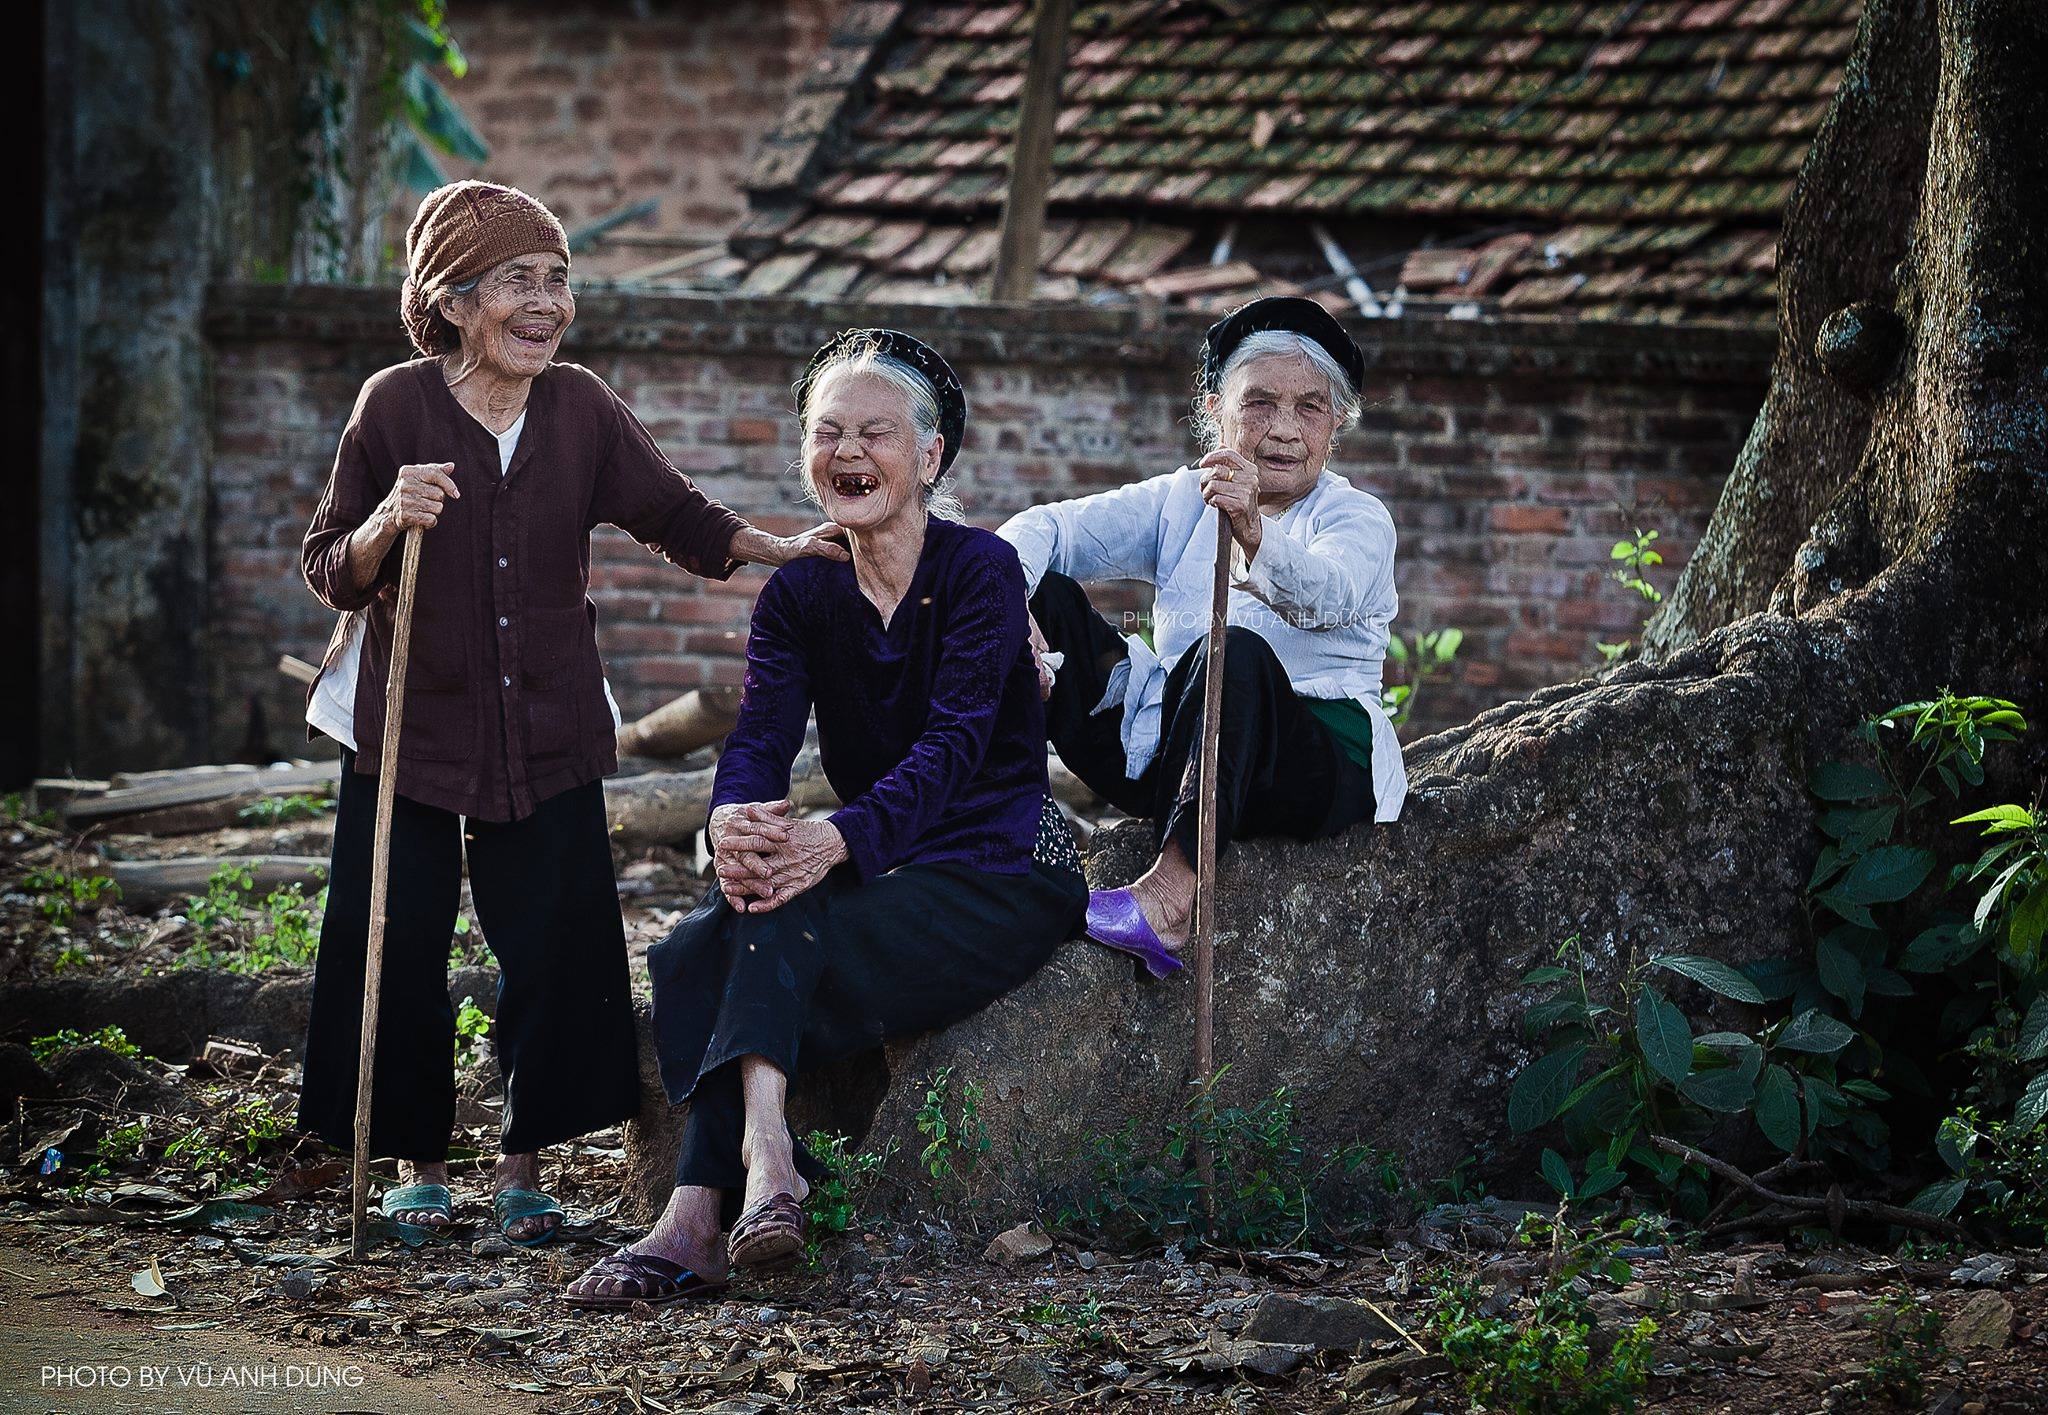 Những hình ảnh về yên bình sẽ đưa bạn đến những vùng quê Việt Nam đẹp nhất. Tức là làng quê Việt Nam - nơi được mệnh danh là đất nước của những nụ cười và tình yêu thương.